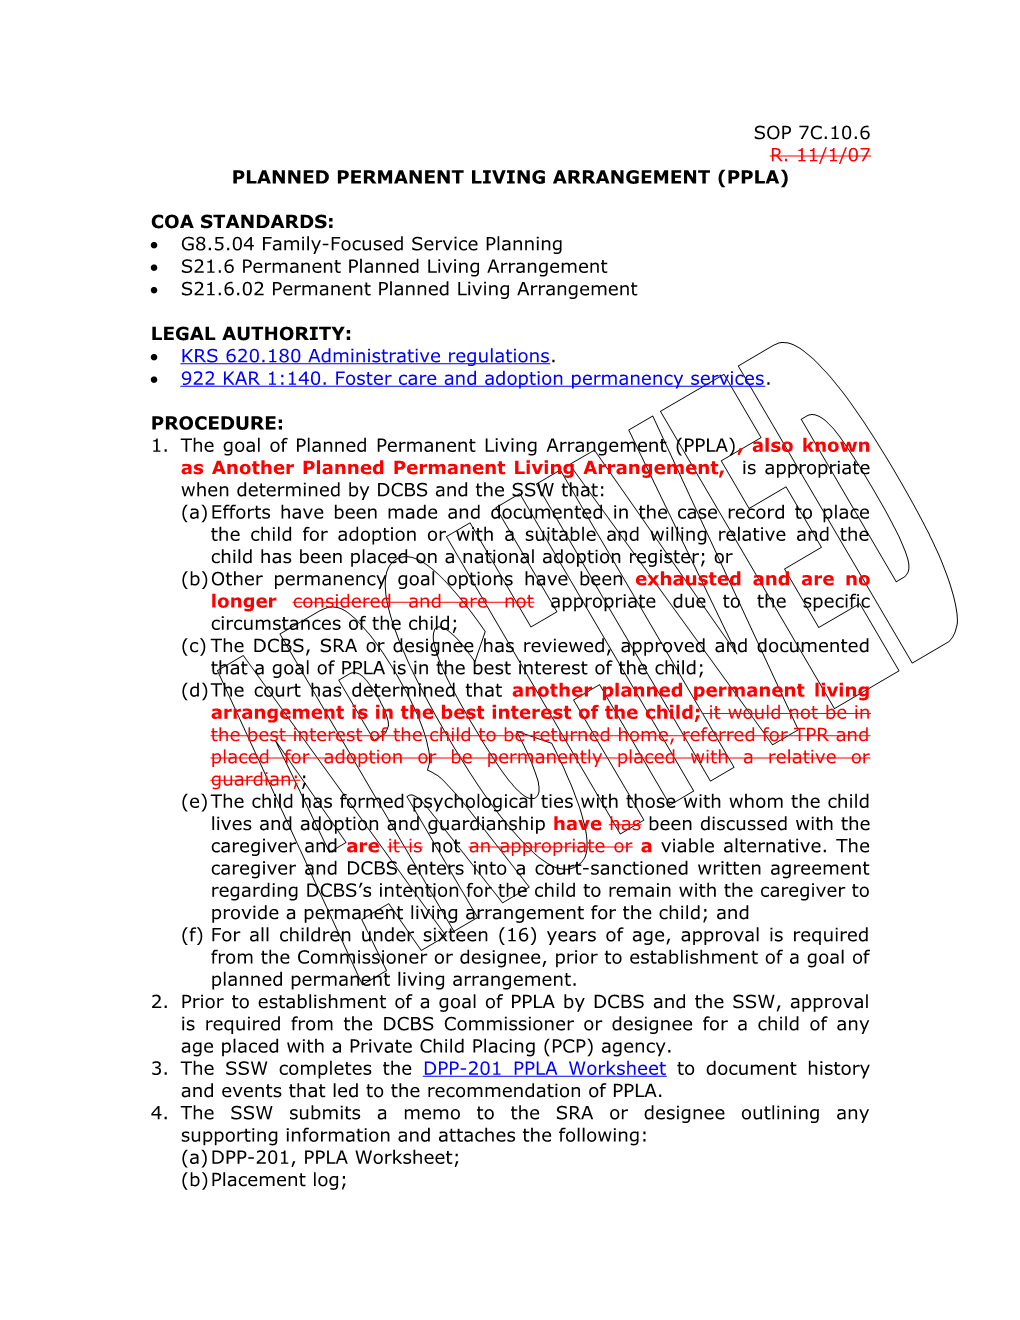 Planned Permanent Living Arrangement (PPLA)